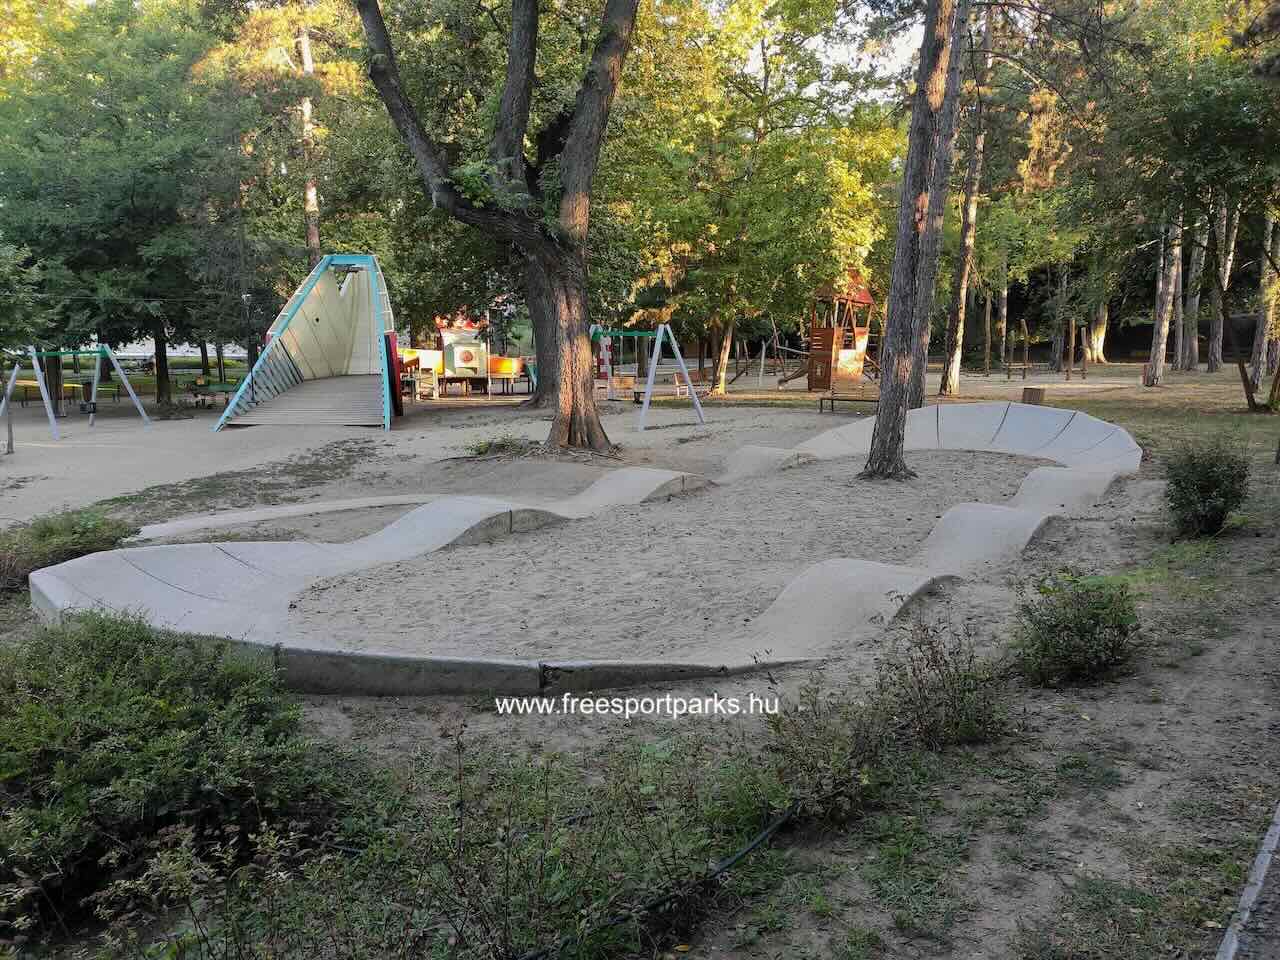 Pump Track pálya gyerekeknek, Békás-tó, Debrecen - Free Sport Parks Blog